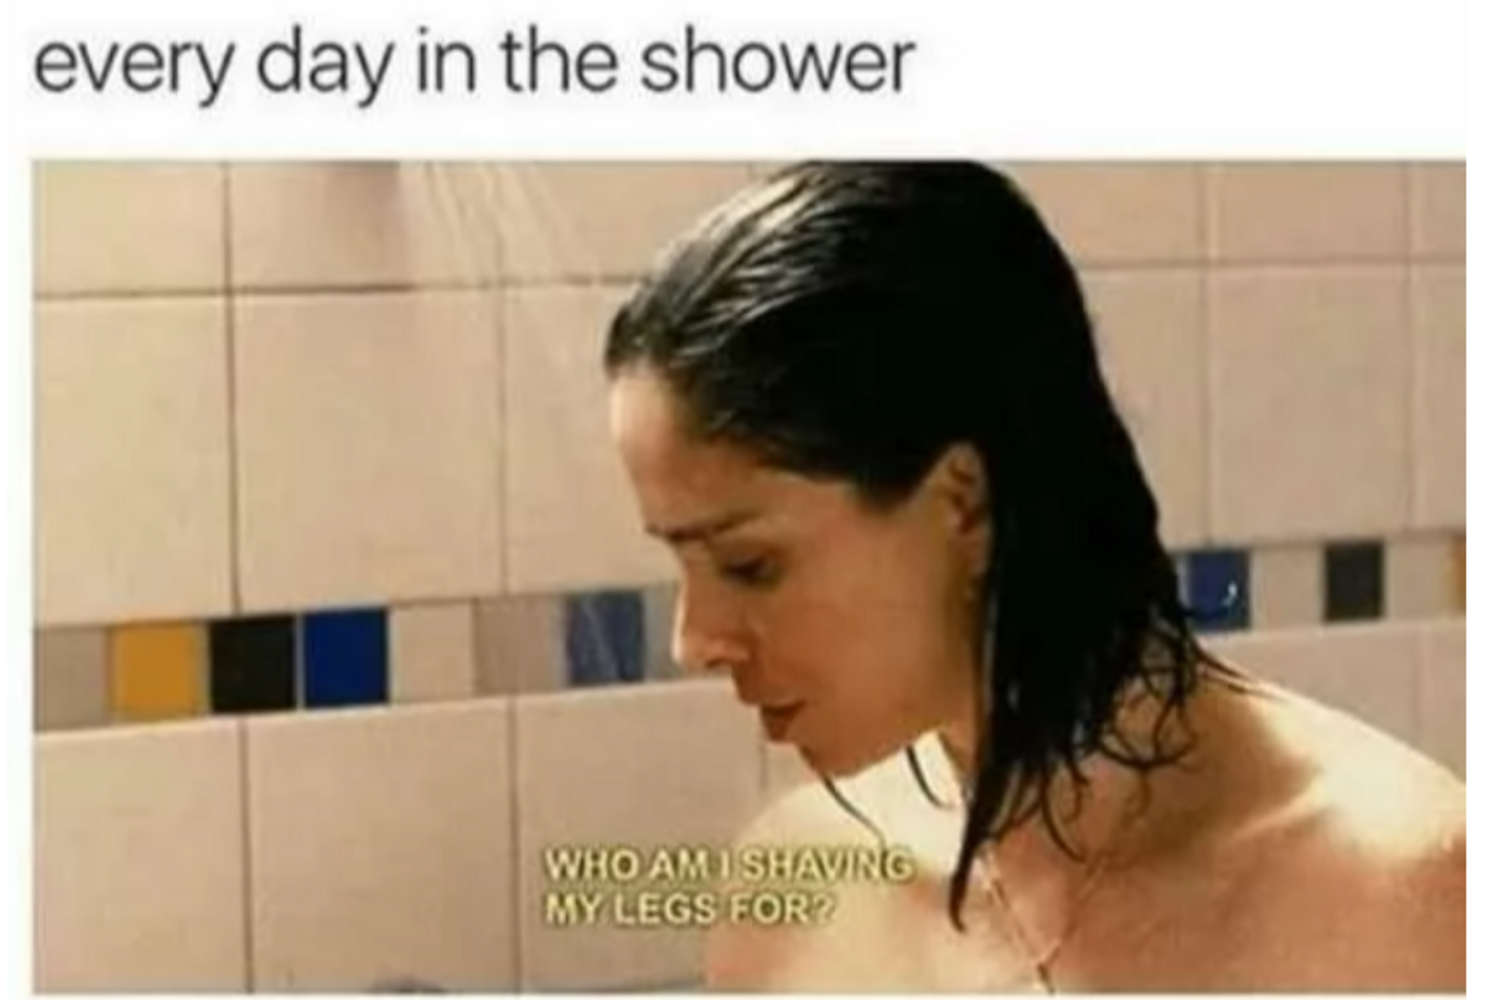 Én mindennap a zuhany alatt: "Igazából kinek is borotválom a lábam?"